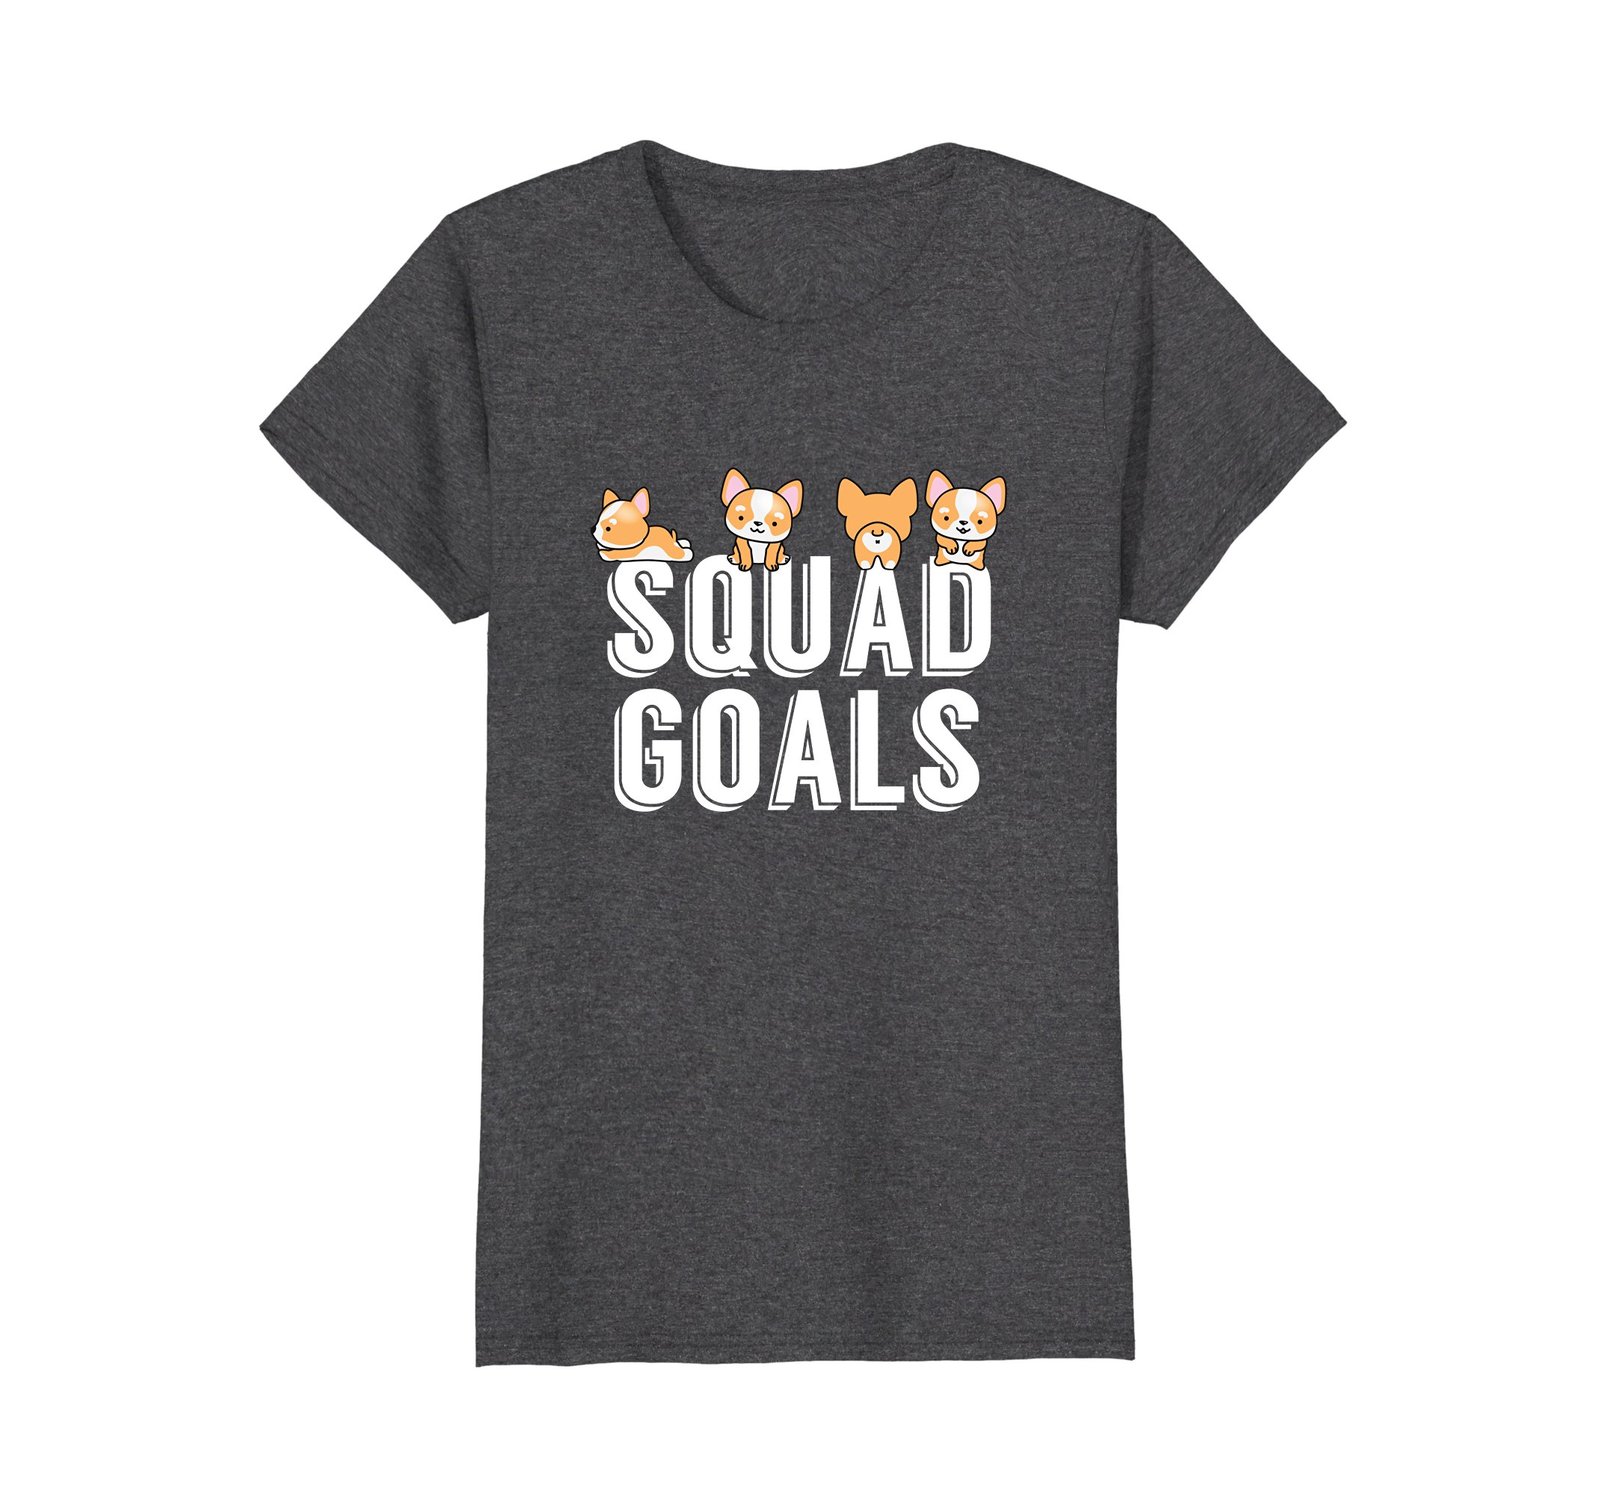 Funny Corgi Squad Goals T-Shirt - $19.99 - $20.99